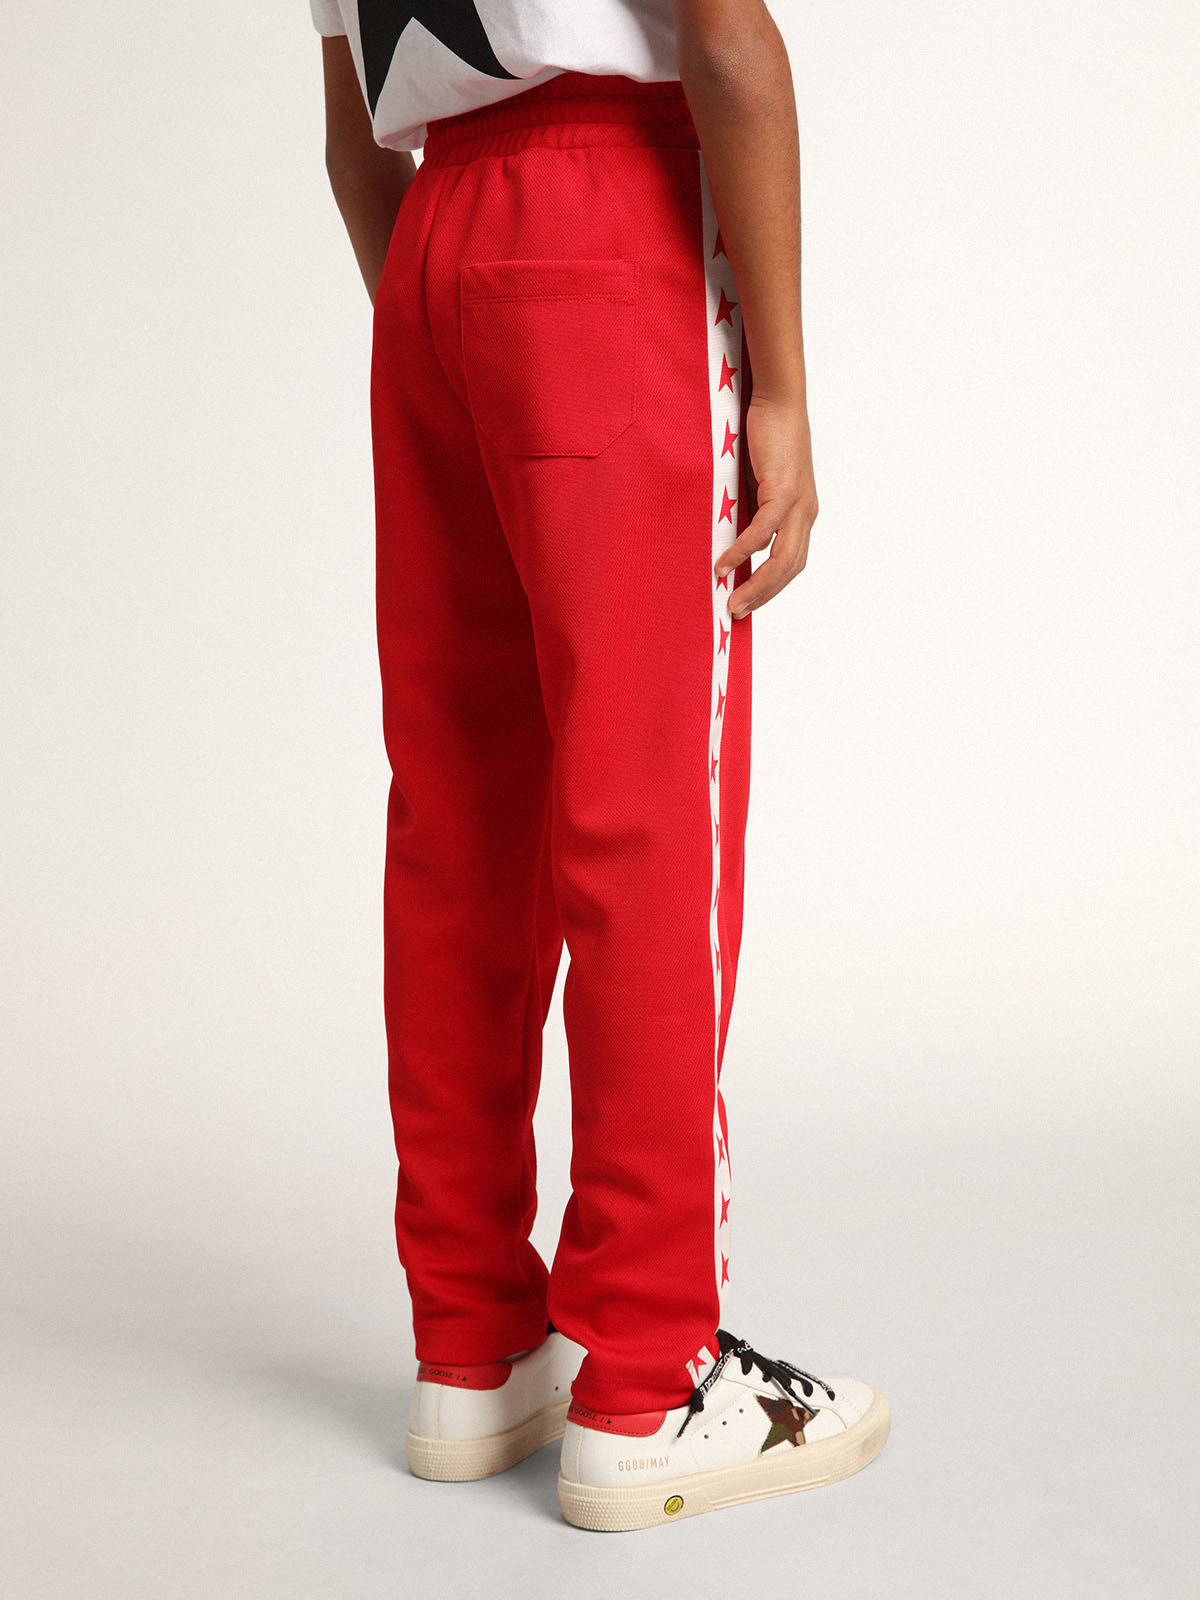 Golden Goose - Pantalon de jogging rouge avec bande blanche et étoiles rouges contrastées in 